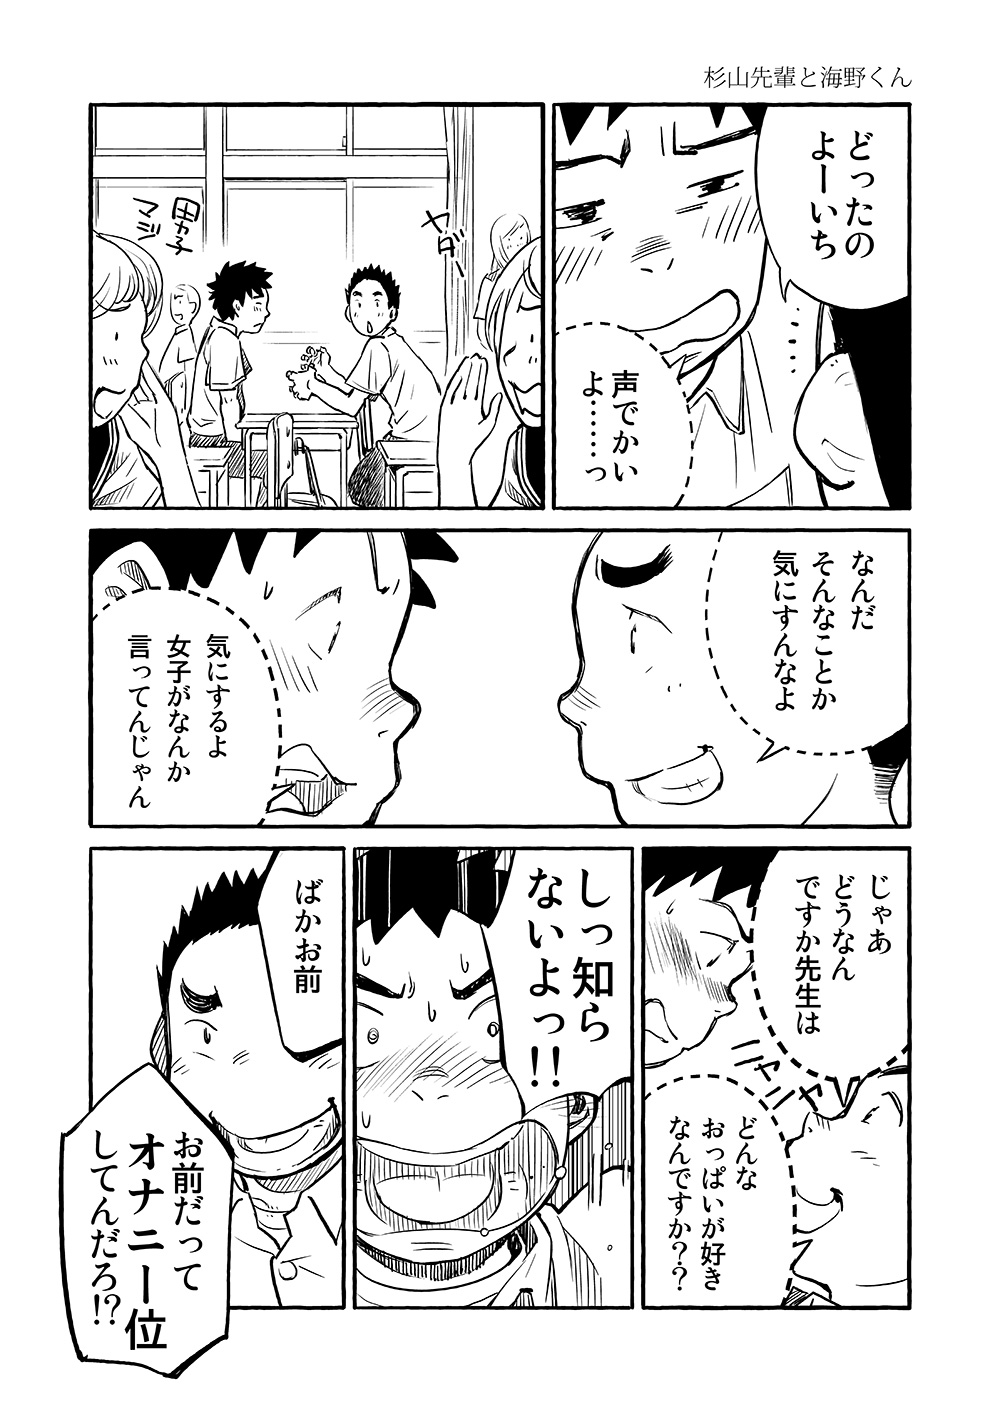 (Shota Scratch 15) [Shounen Zoom (Shigeru)] Manga Shounen Zoom Vol. 03 page 14 full